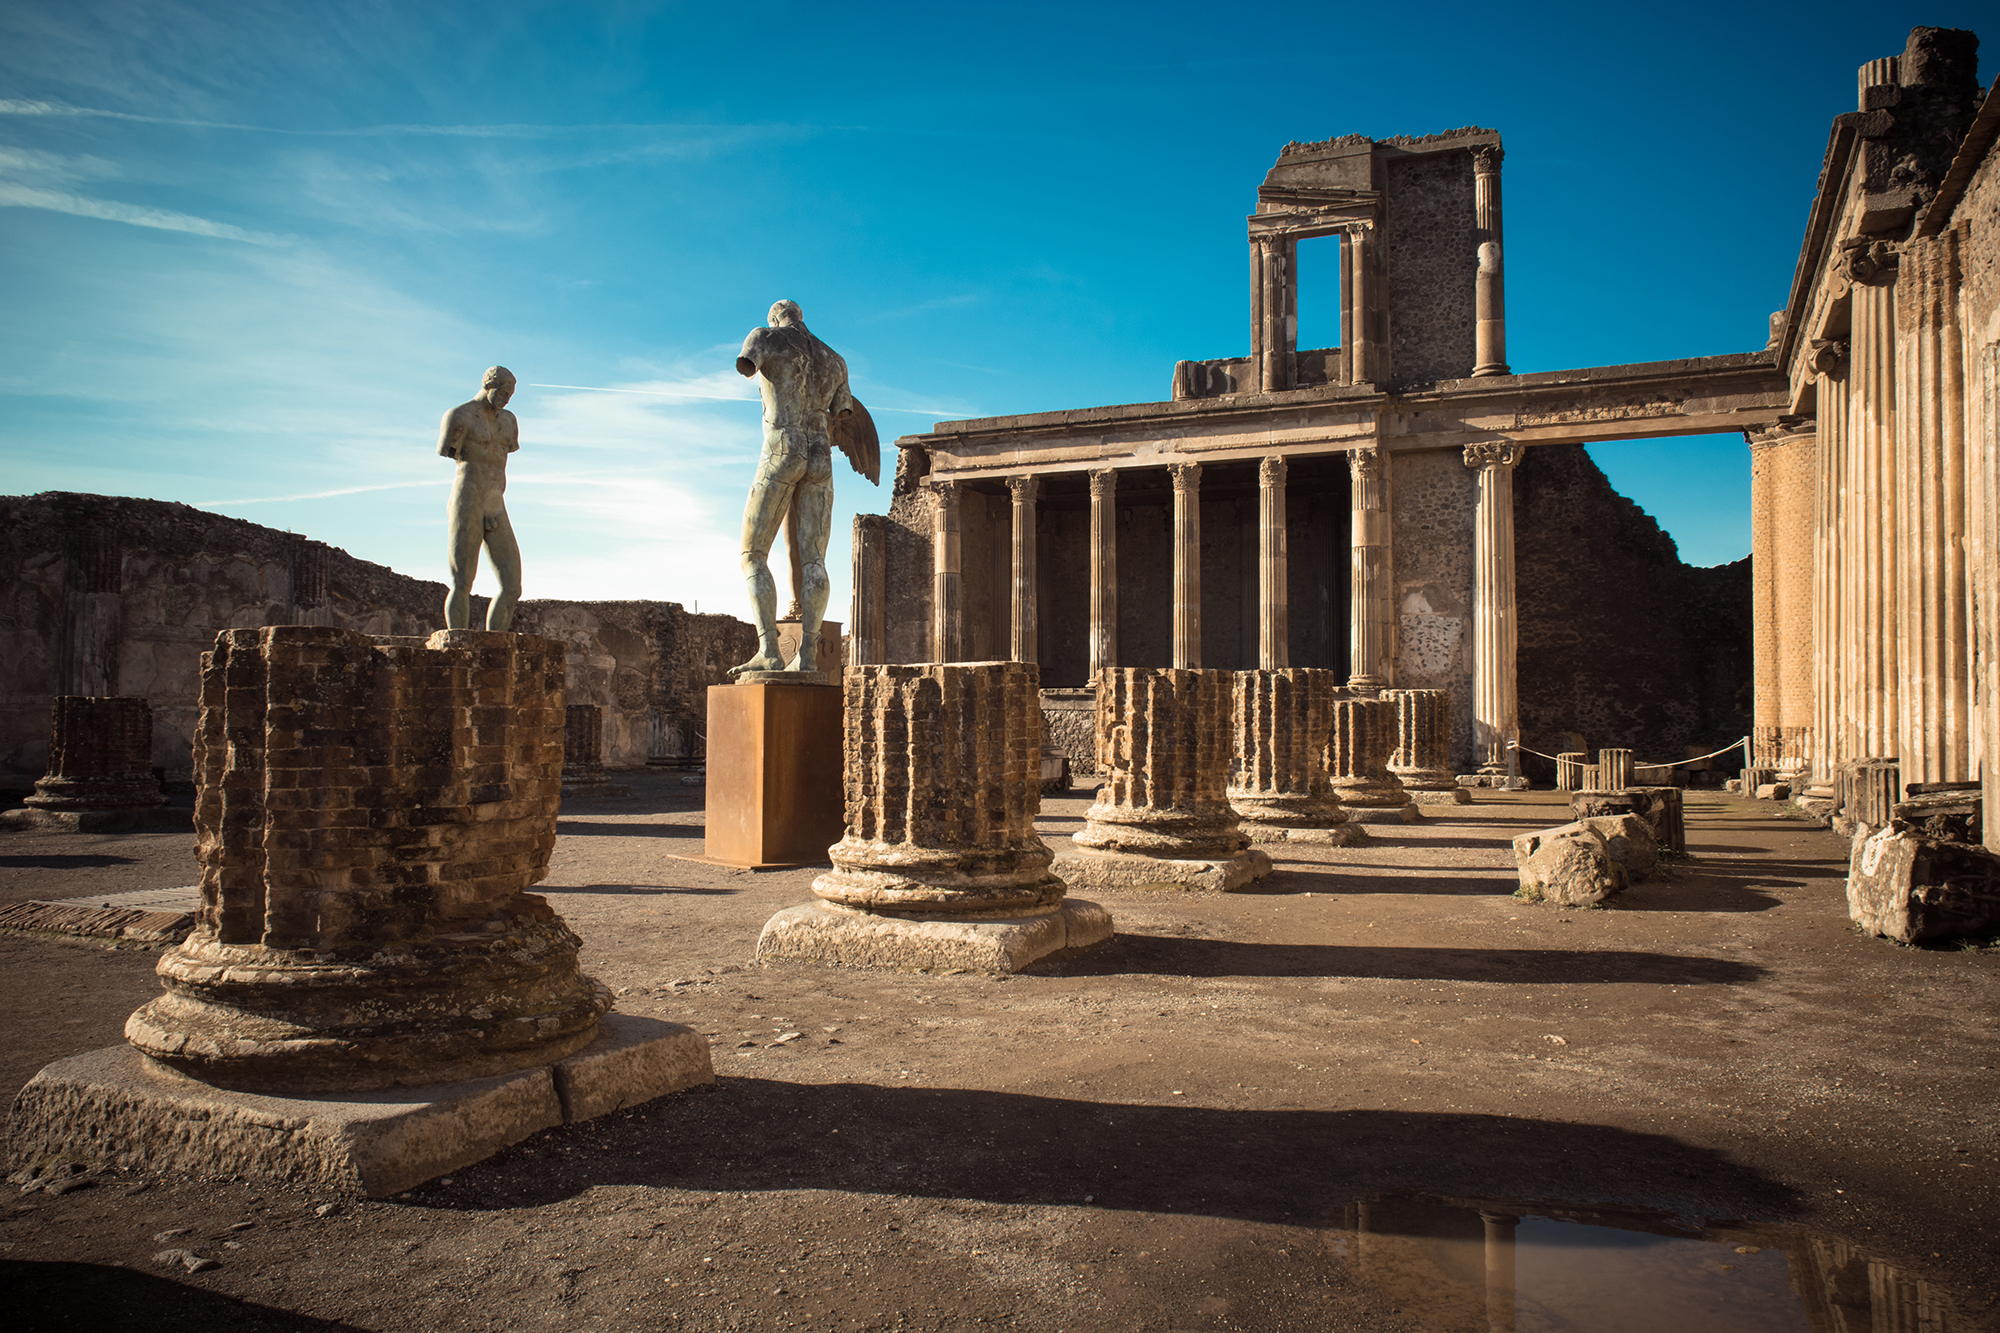 2nd Day: “Pompei & Ville Vesuviane– the past”